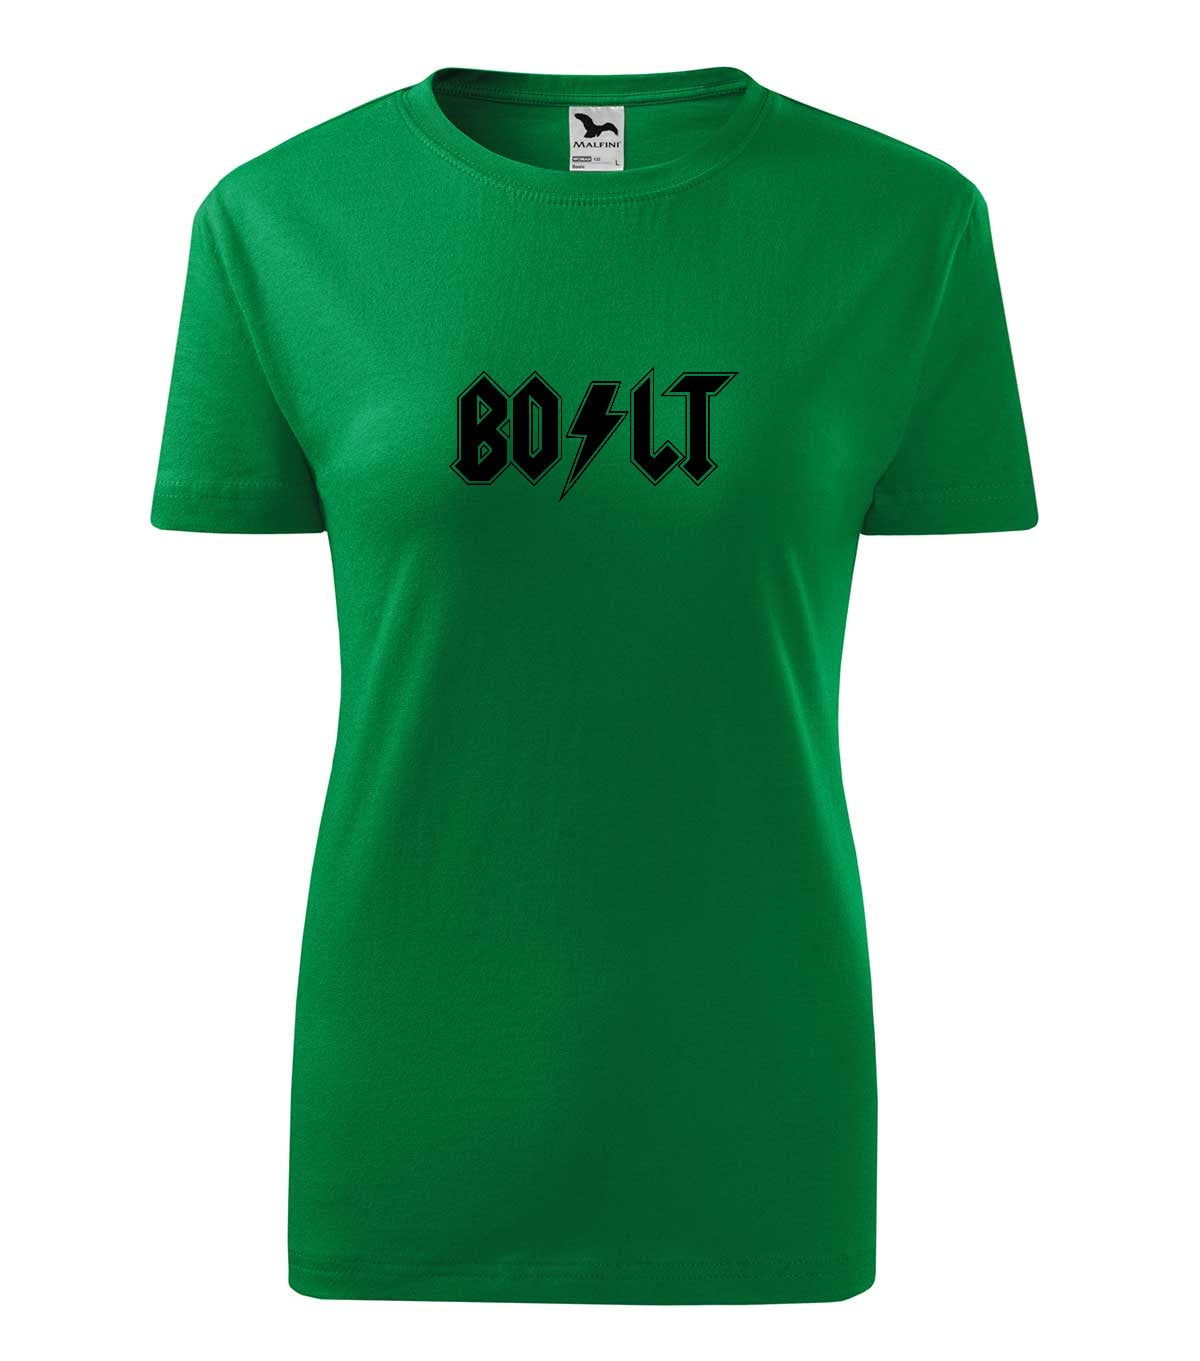 Bolt női technikai póló